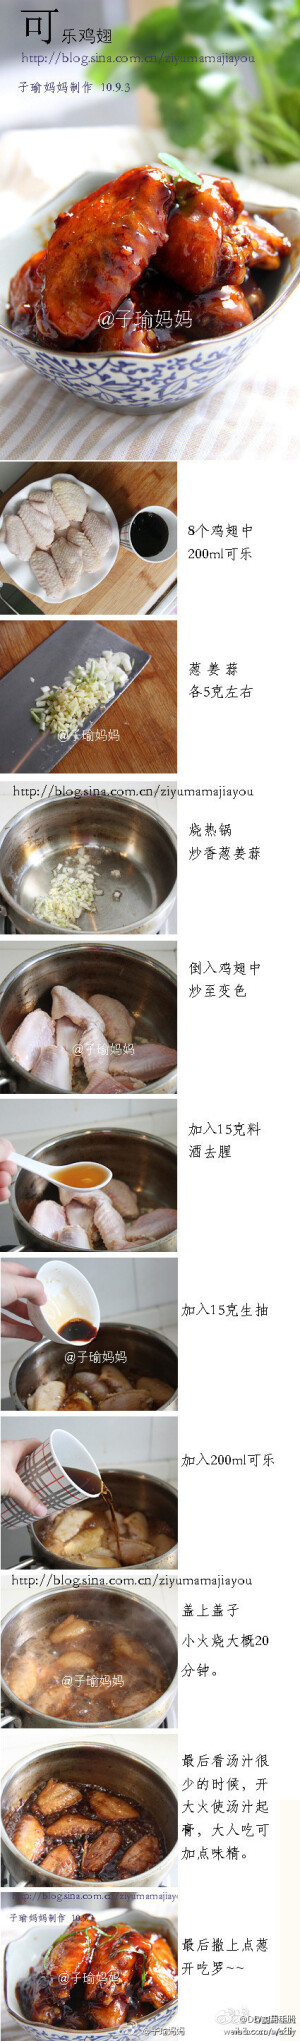 【可乐鸡翅DIY】真的很简单,一学就会,是最普通的家常菜做法